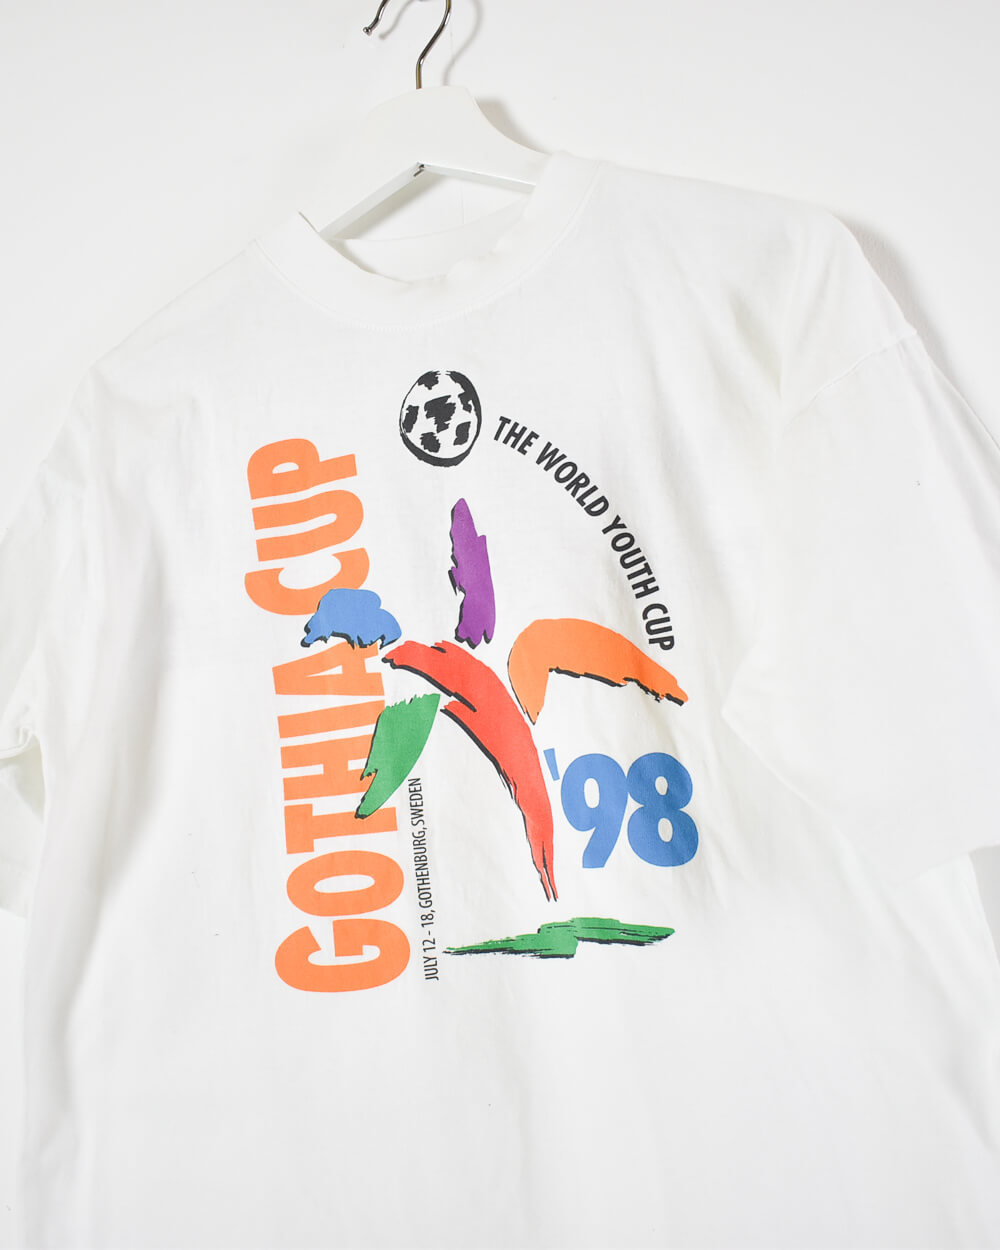 White Reebok Gotha Cup 98 T-Shirt - Small